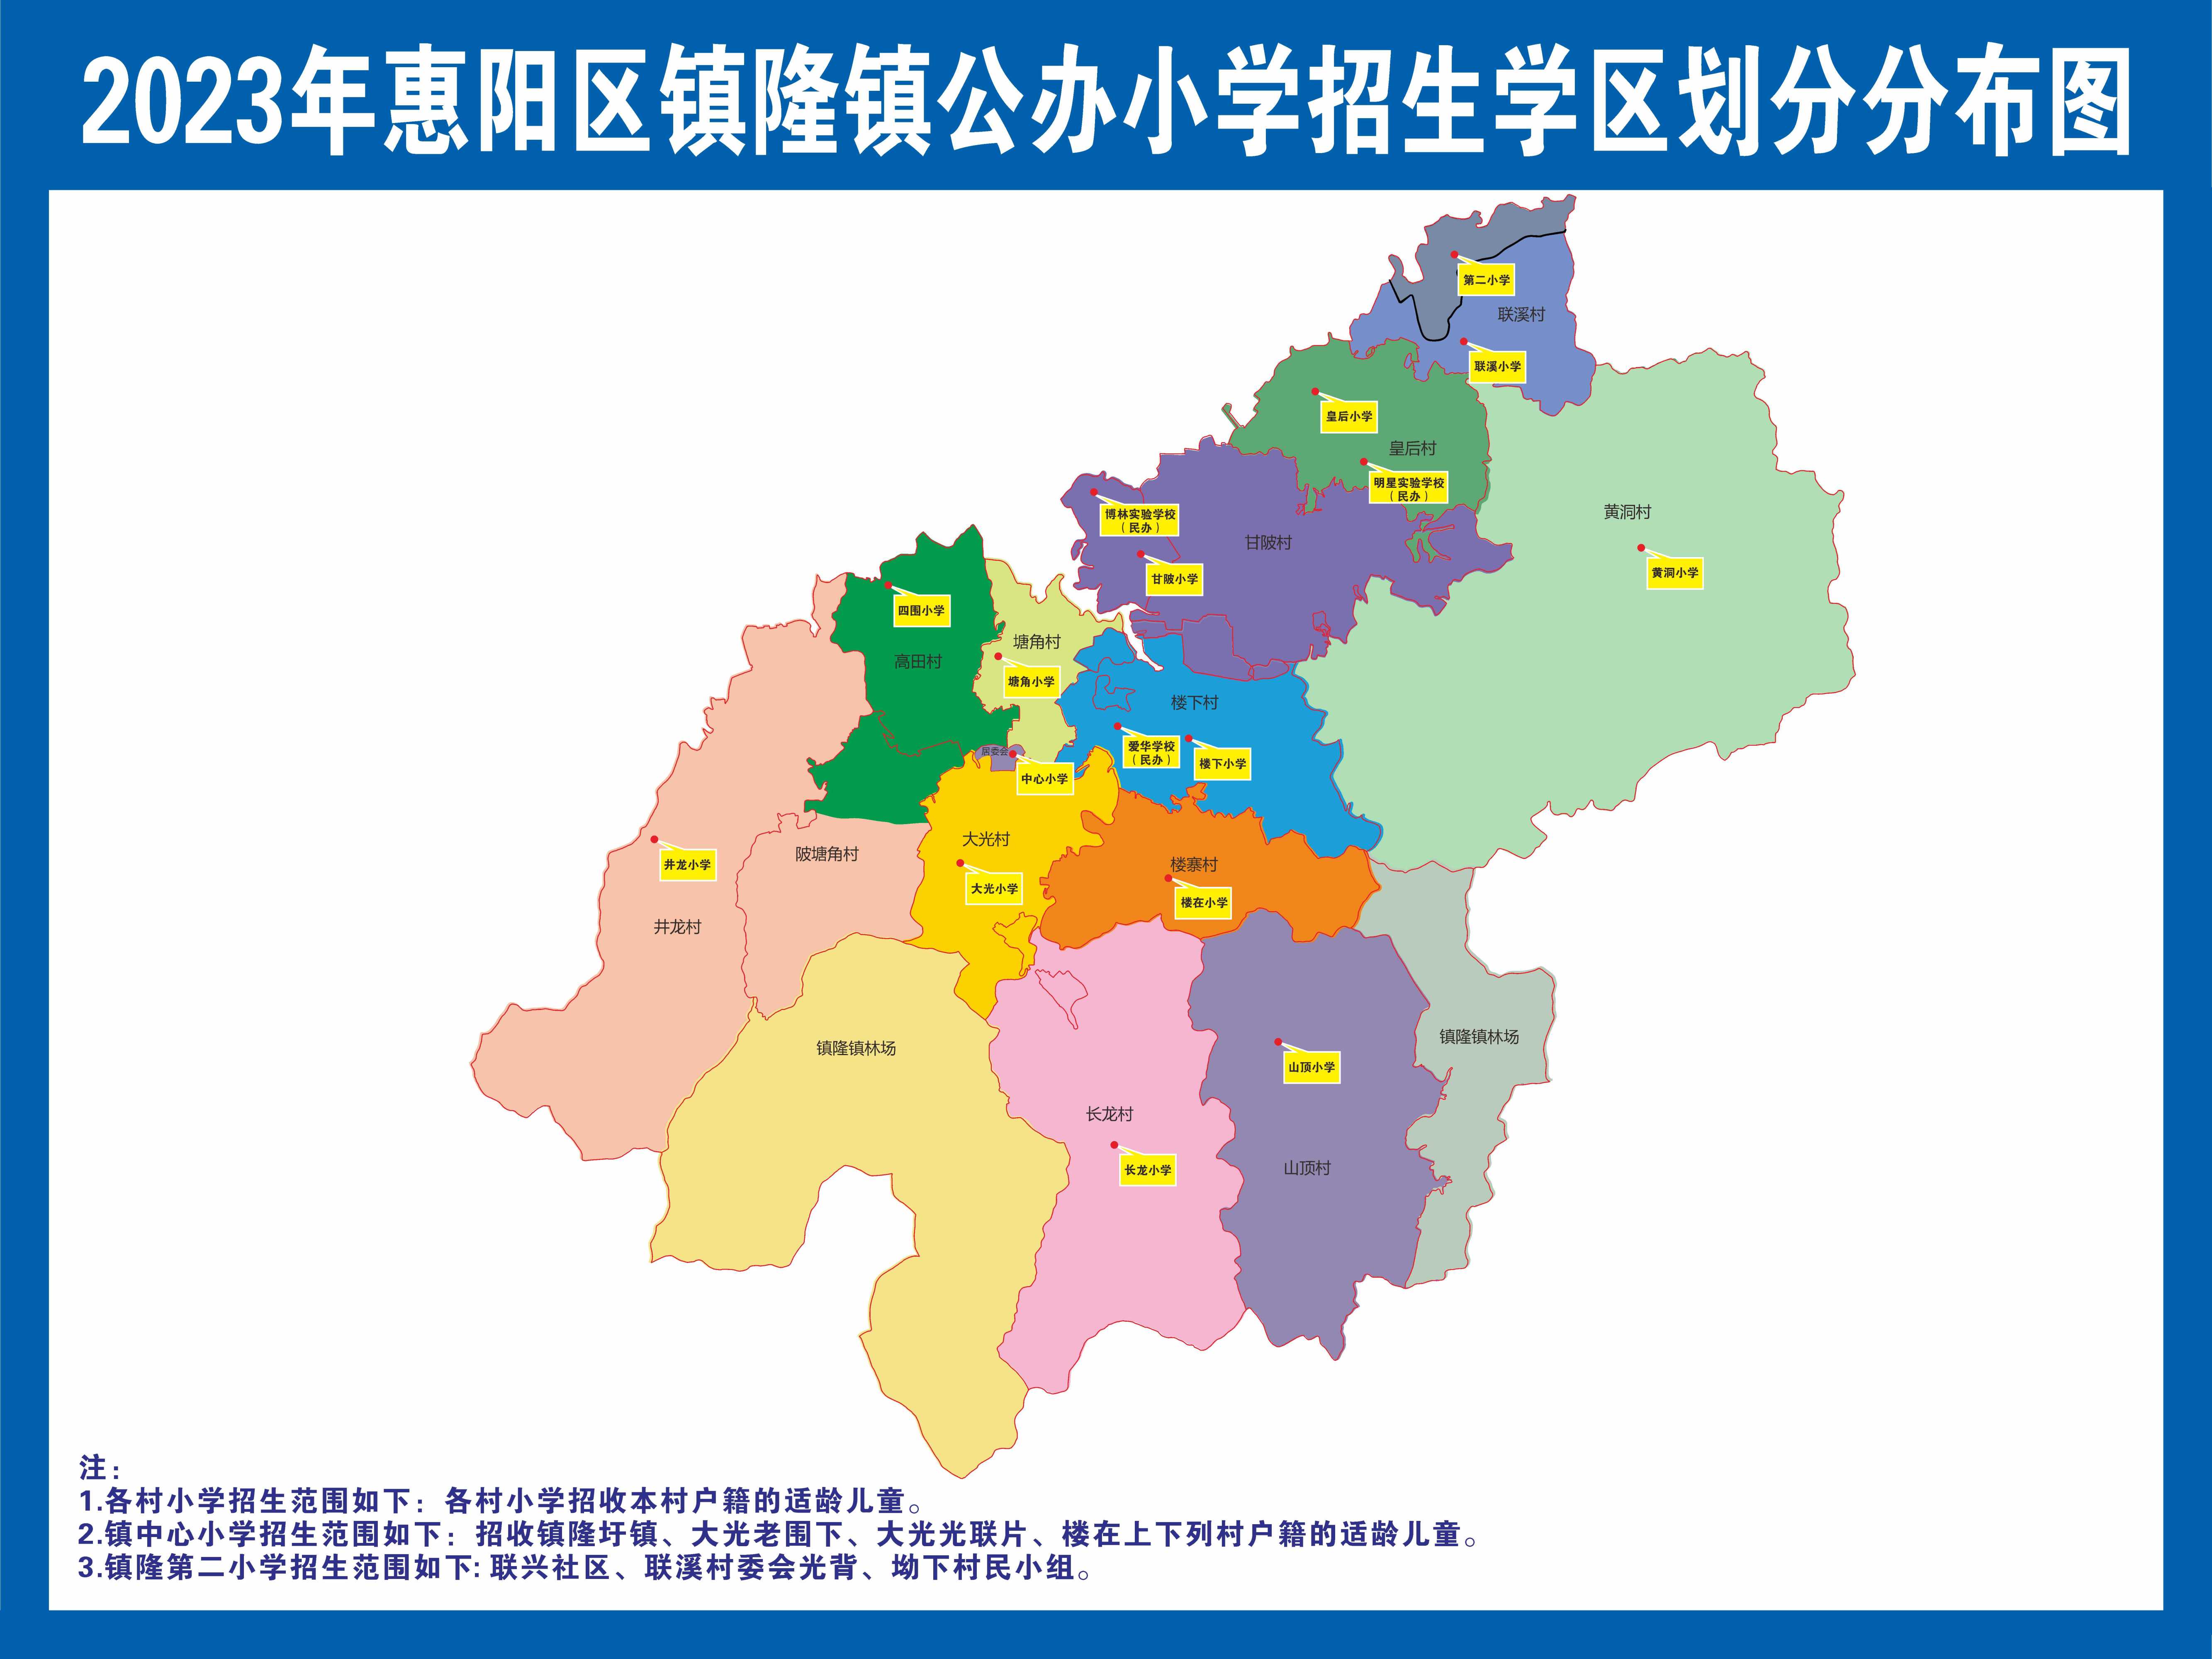 惠州市惠阳区各镇地图图片